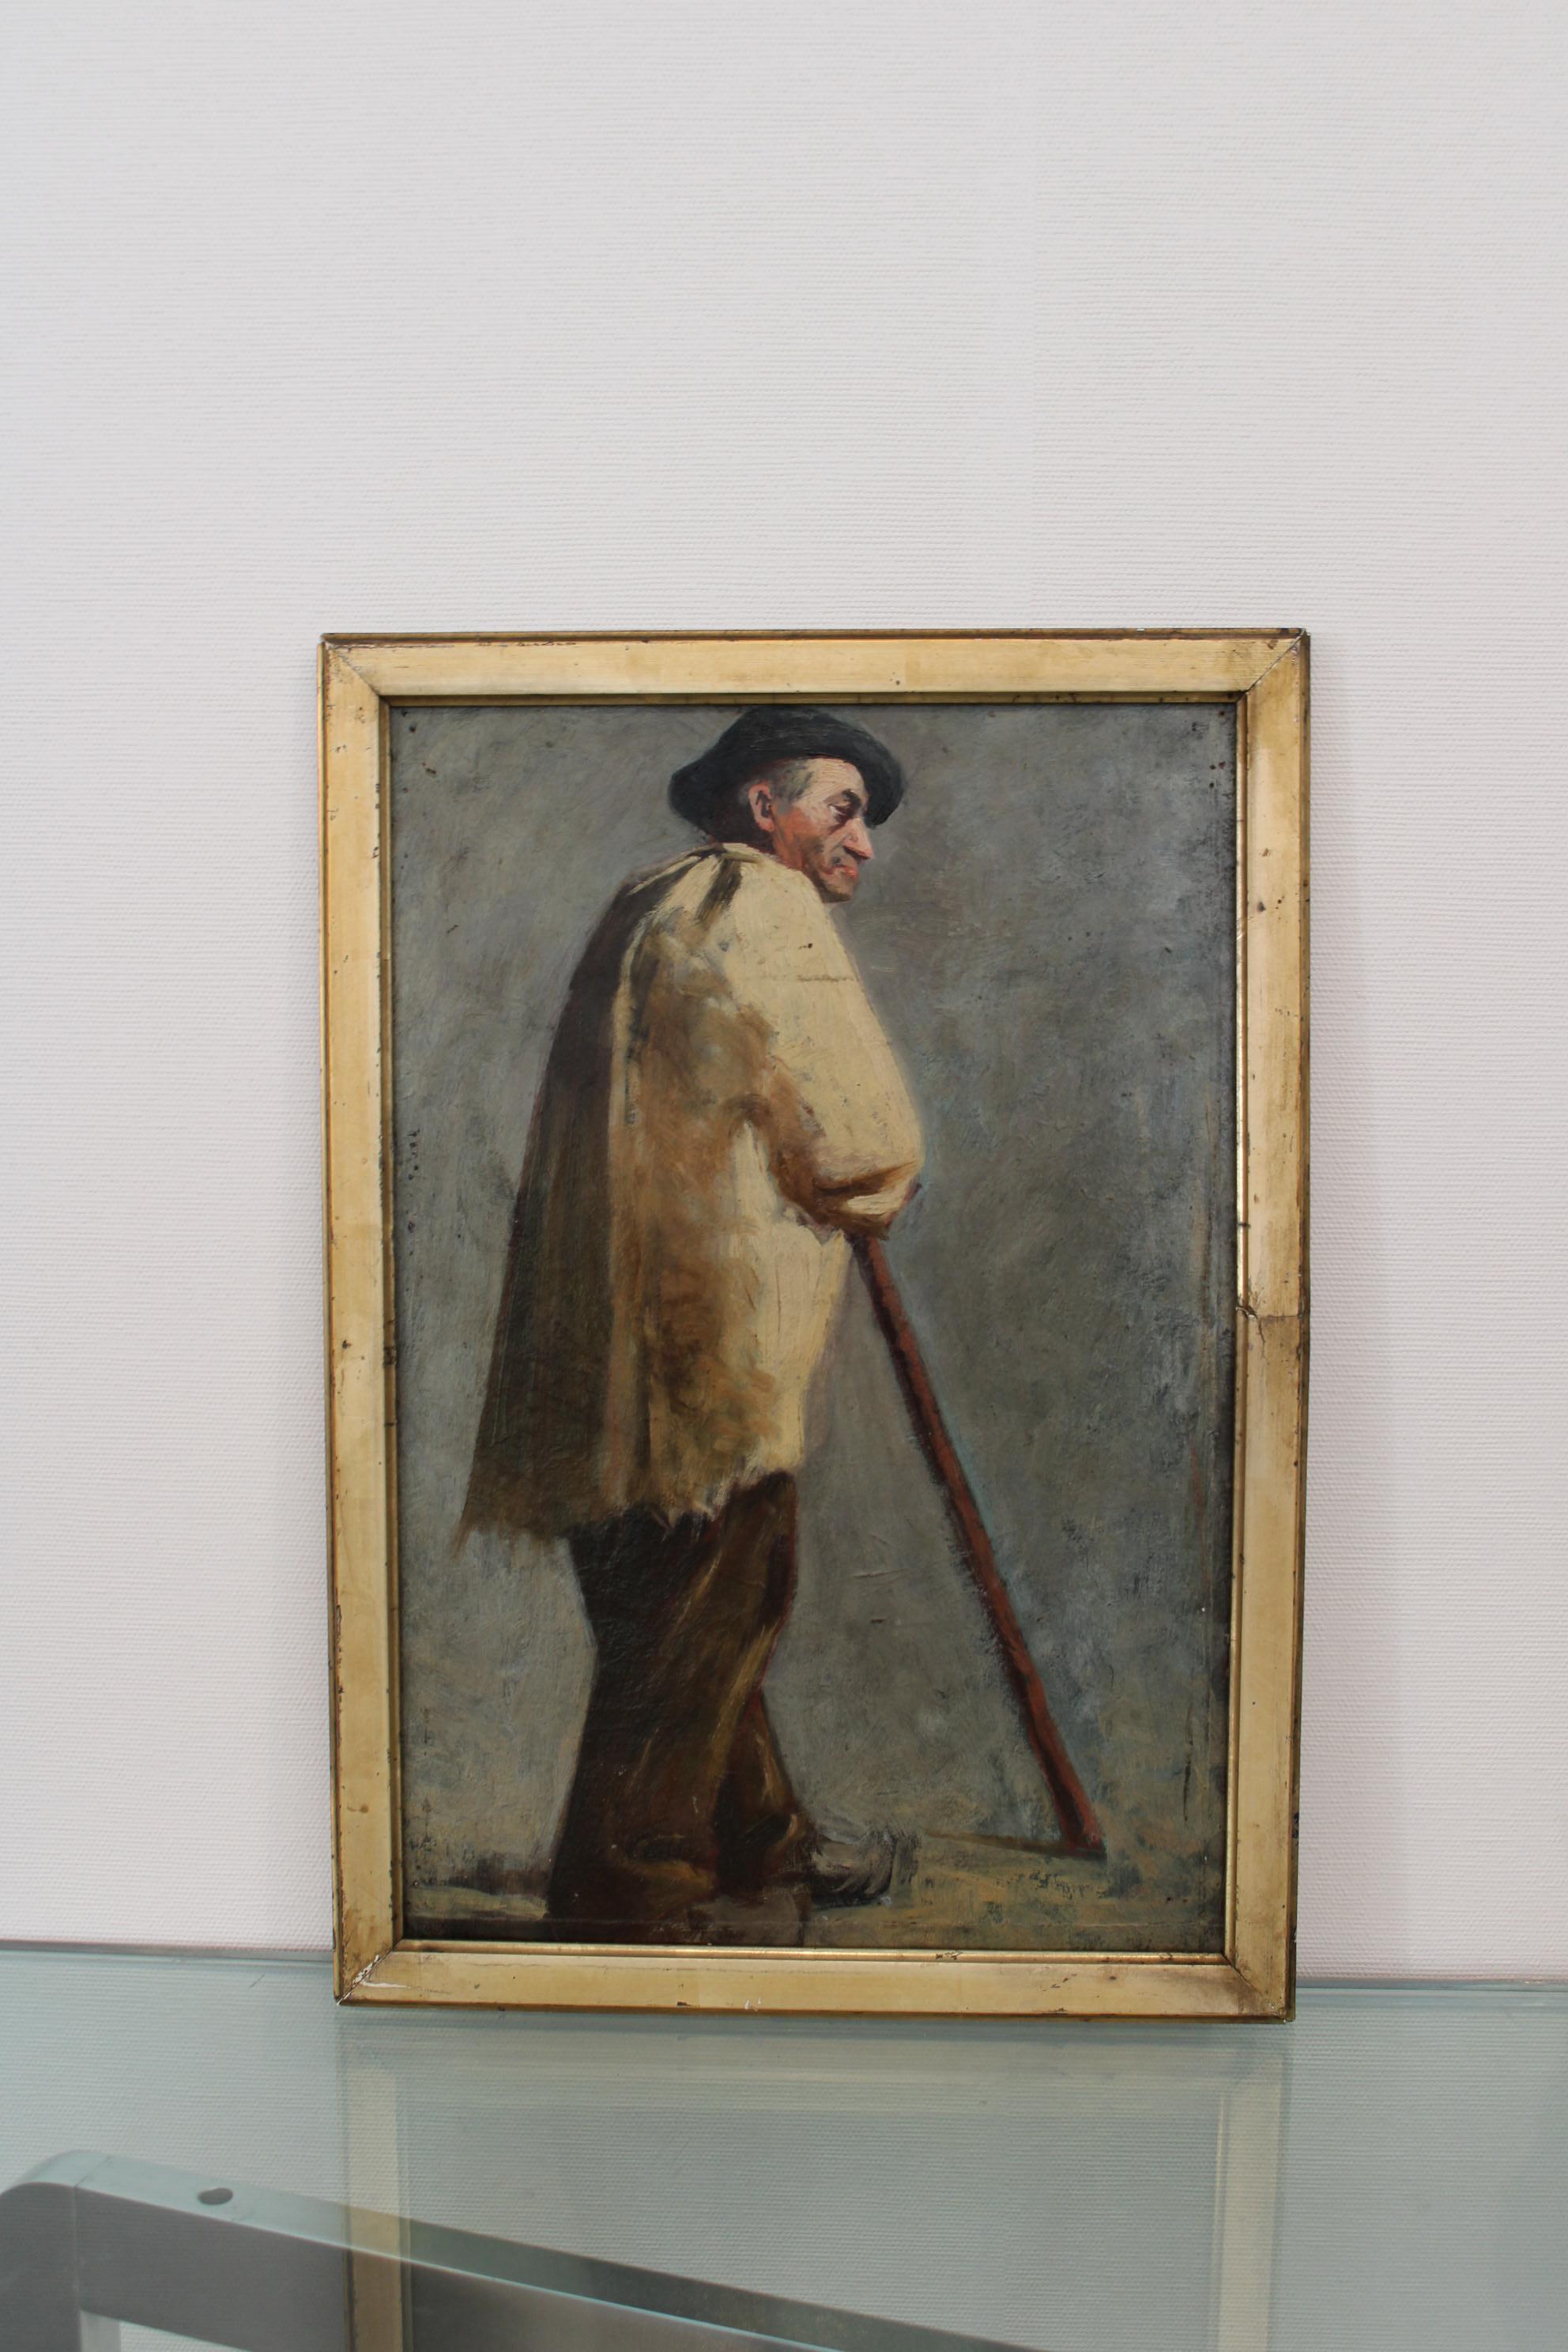 Portrait d'un Provençal par August Suc
Huile sur carton
France, 19e-20e siècle

Trous dans la peinture (voir détails des photos) 